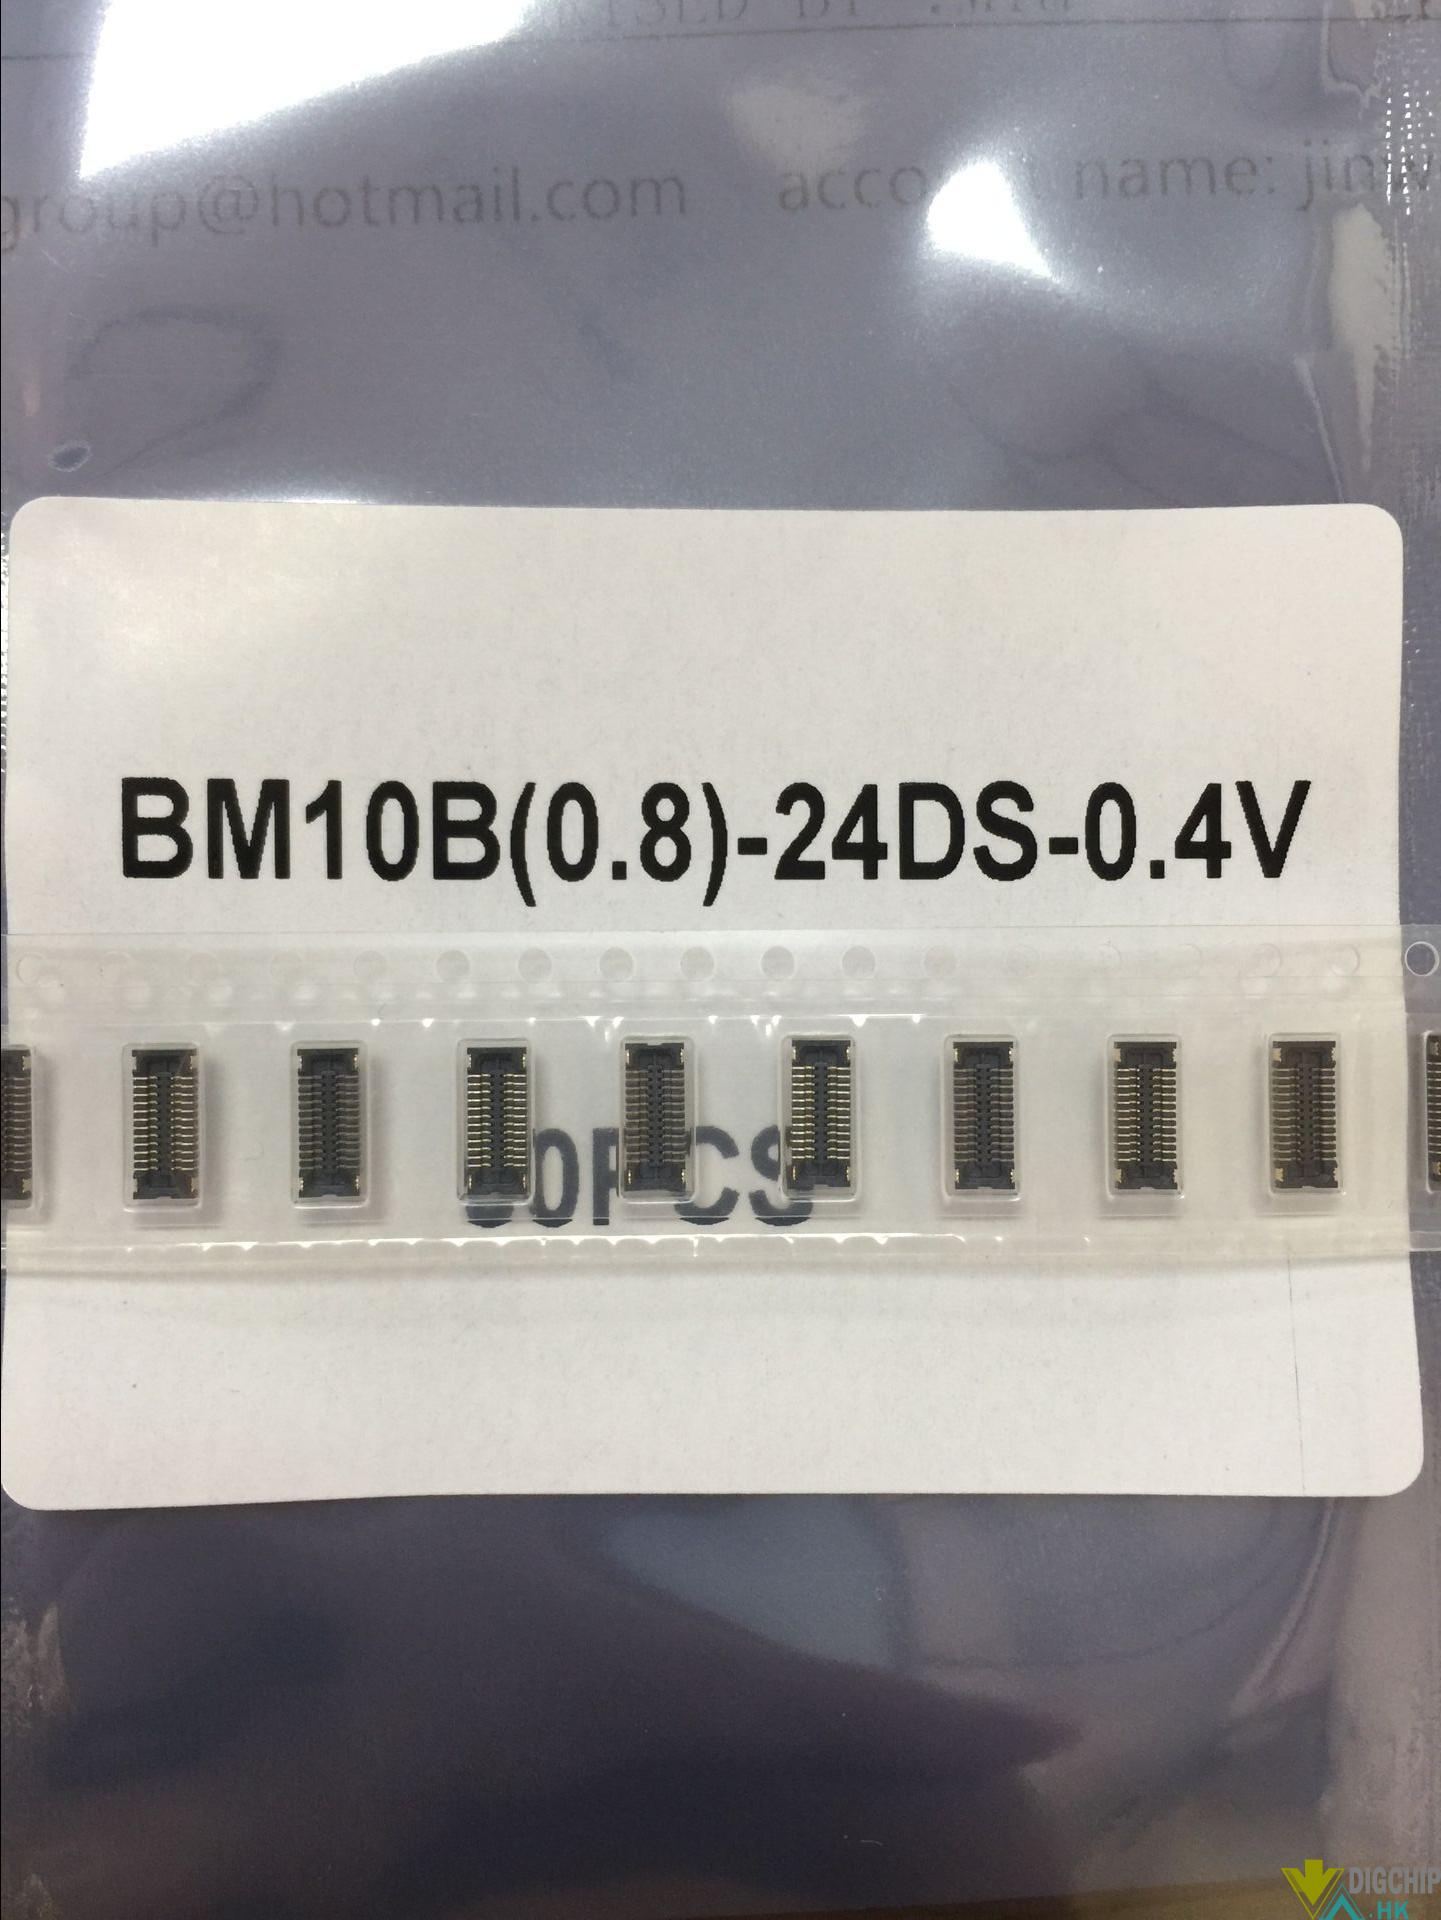 BM10B(0.8)-24DS-0.4V